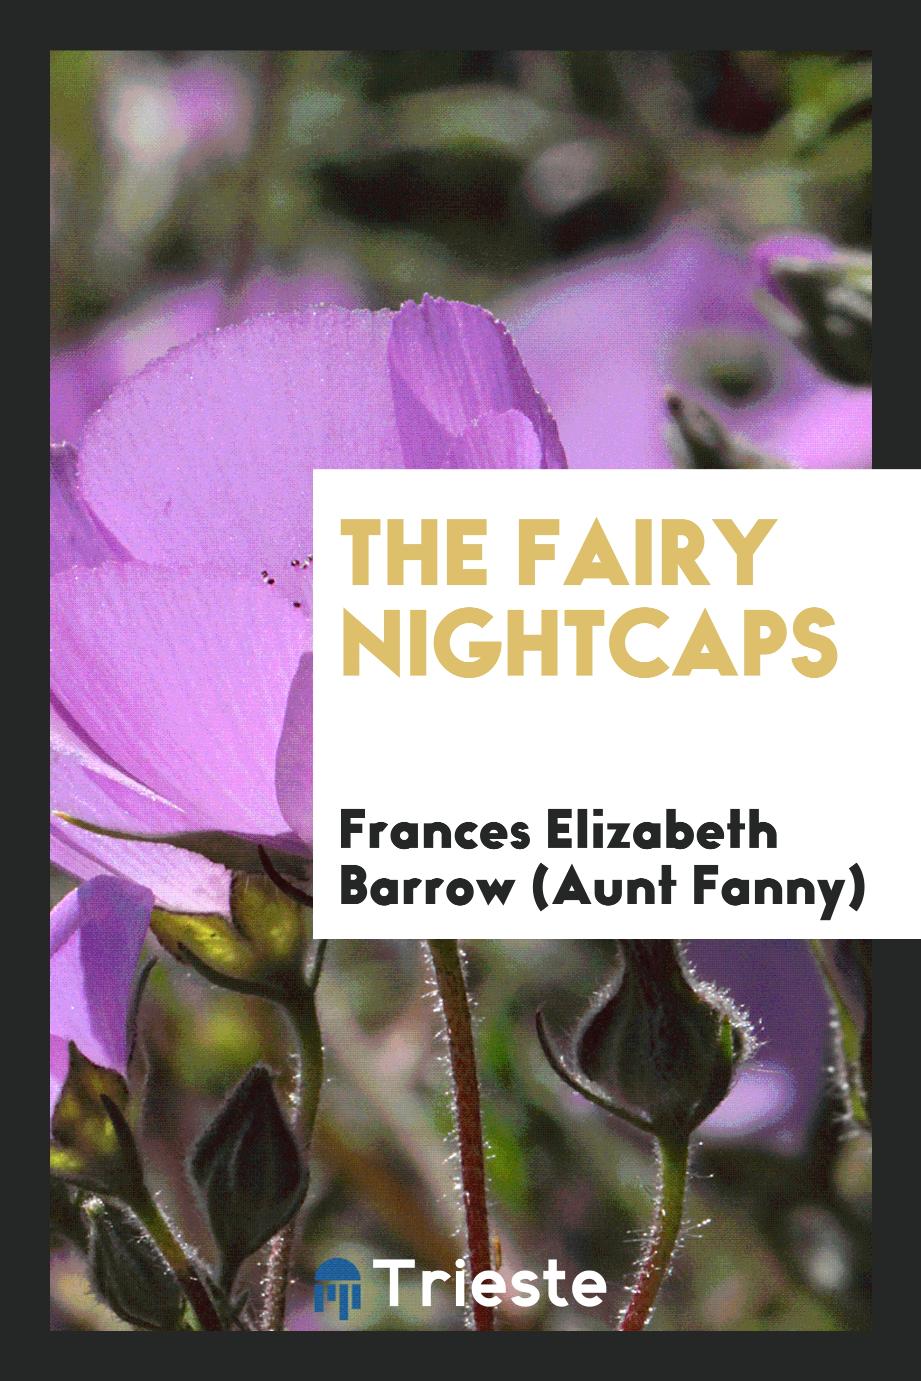 The fairy nightcaps